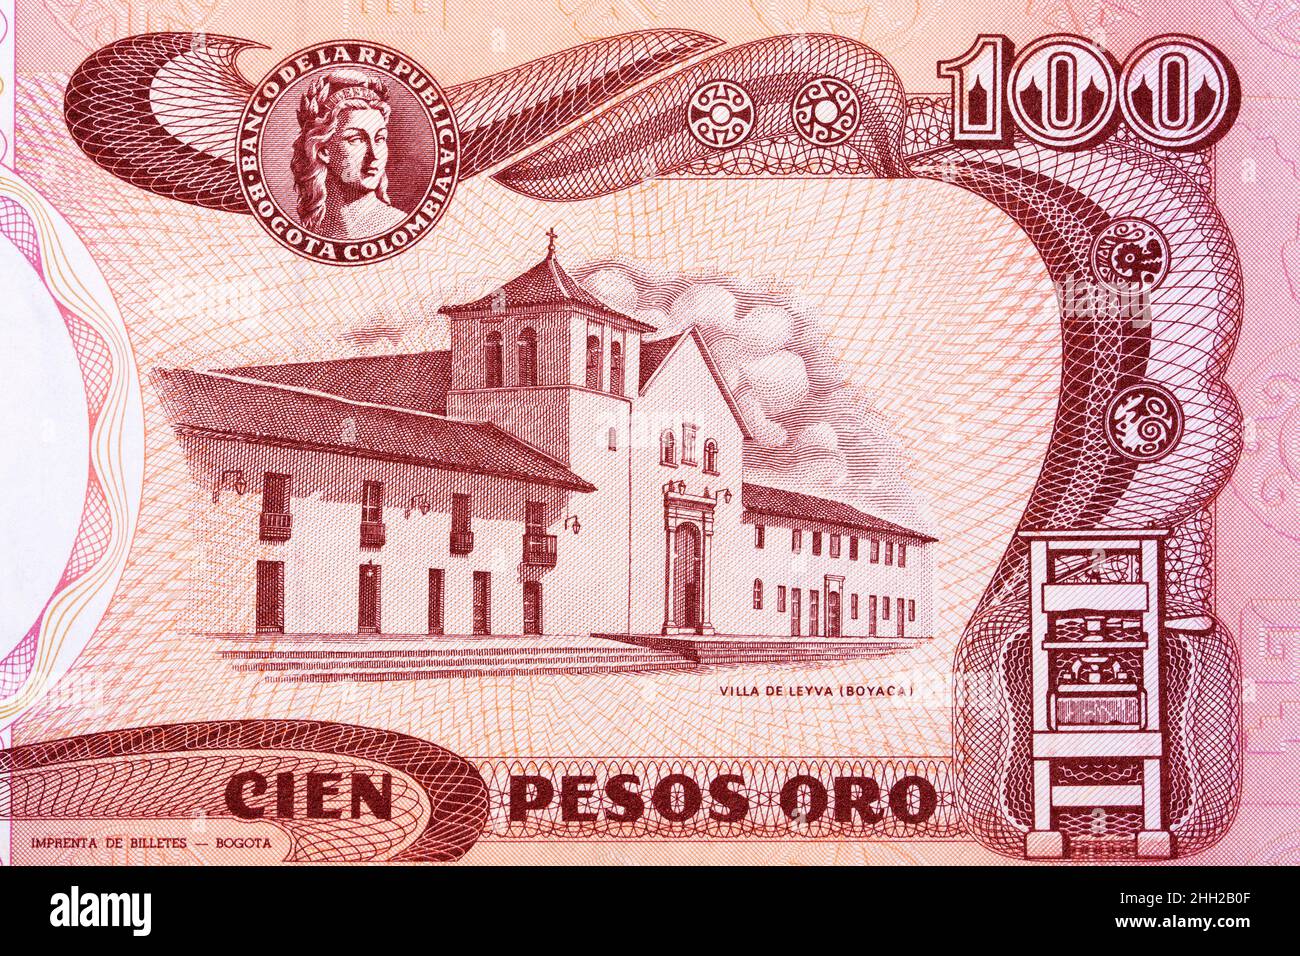 Villa de Leyva de vieux l'argent colombien - pesos Banque D'Images